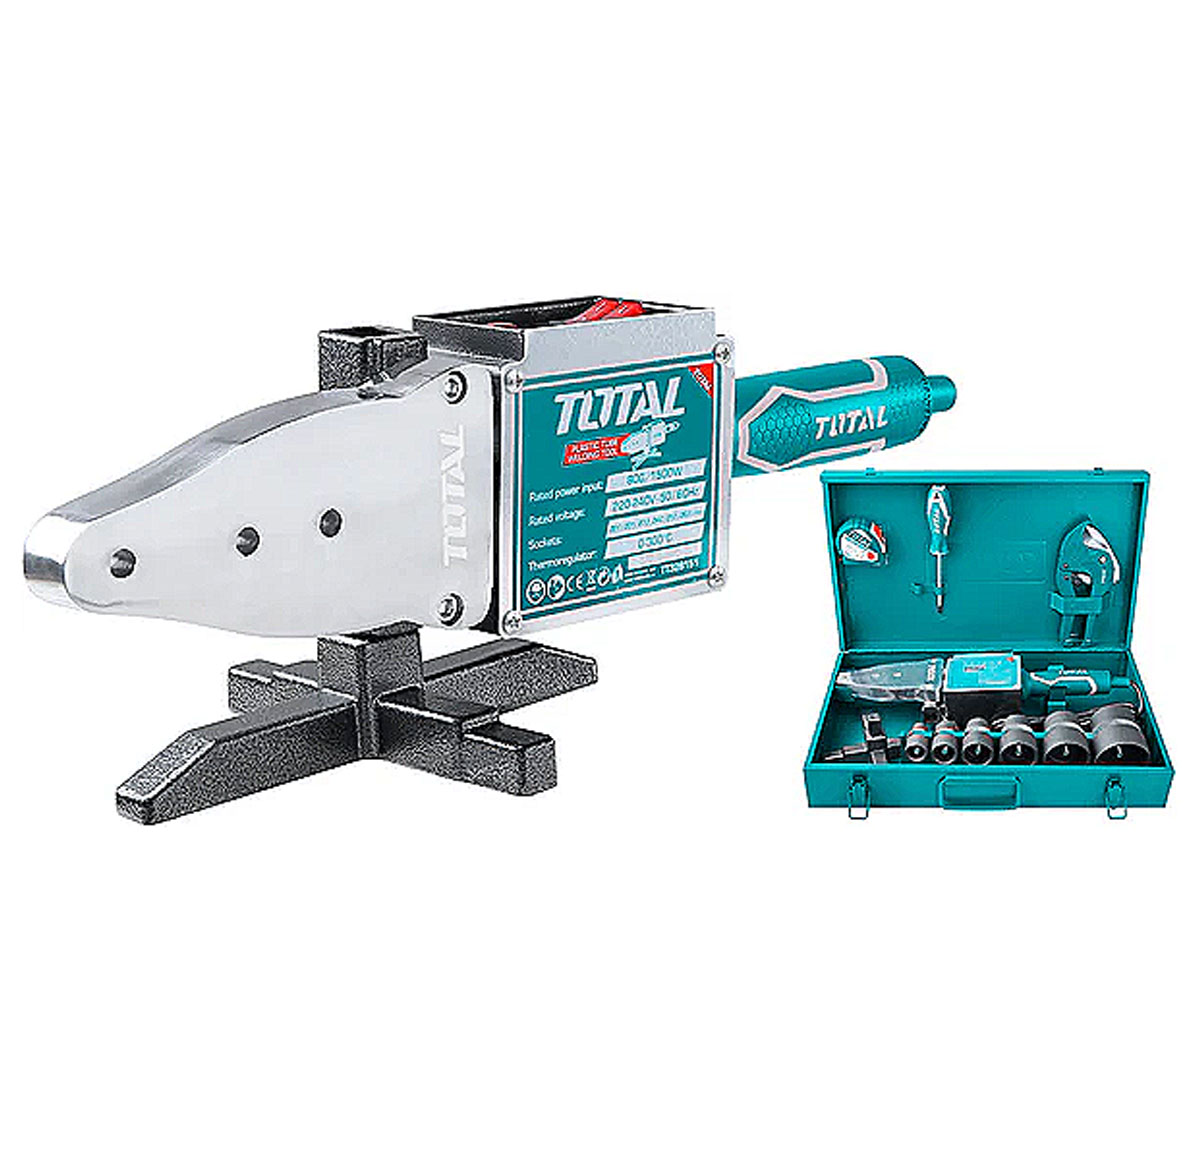 Total Plastic tube welding tool 800W TT328151